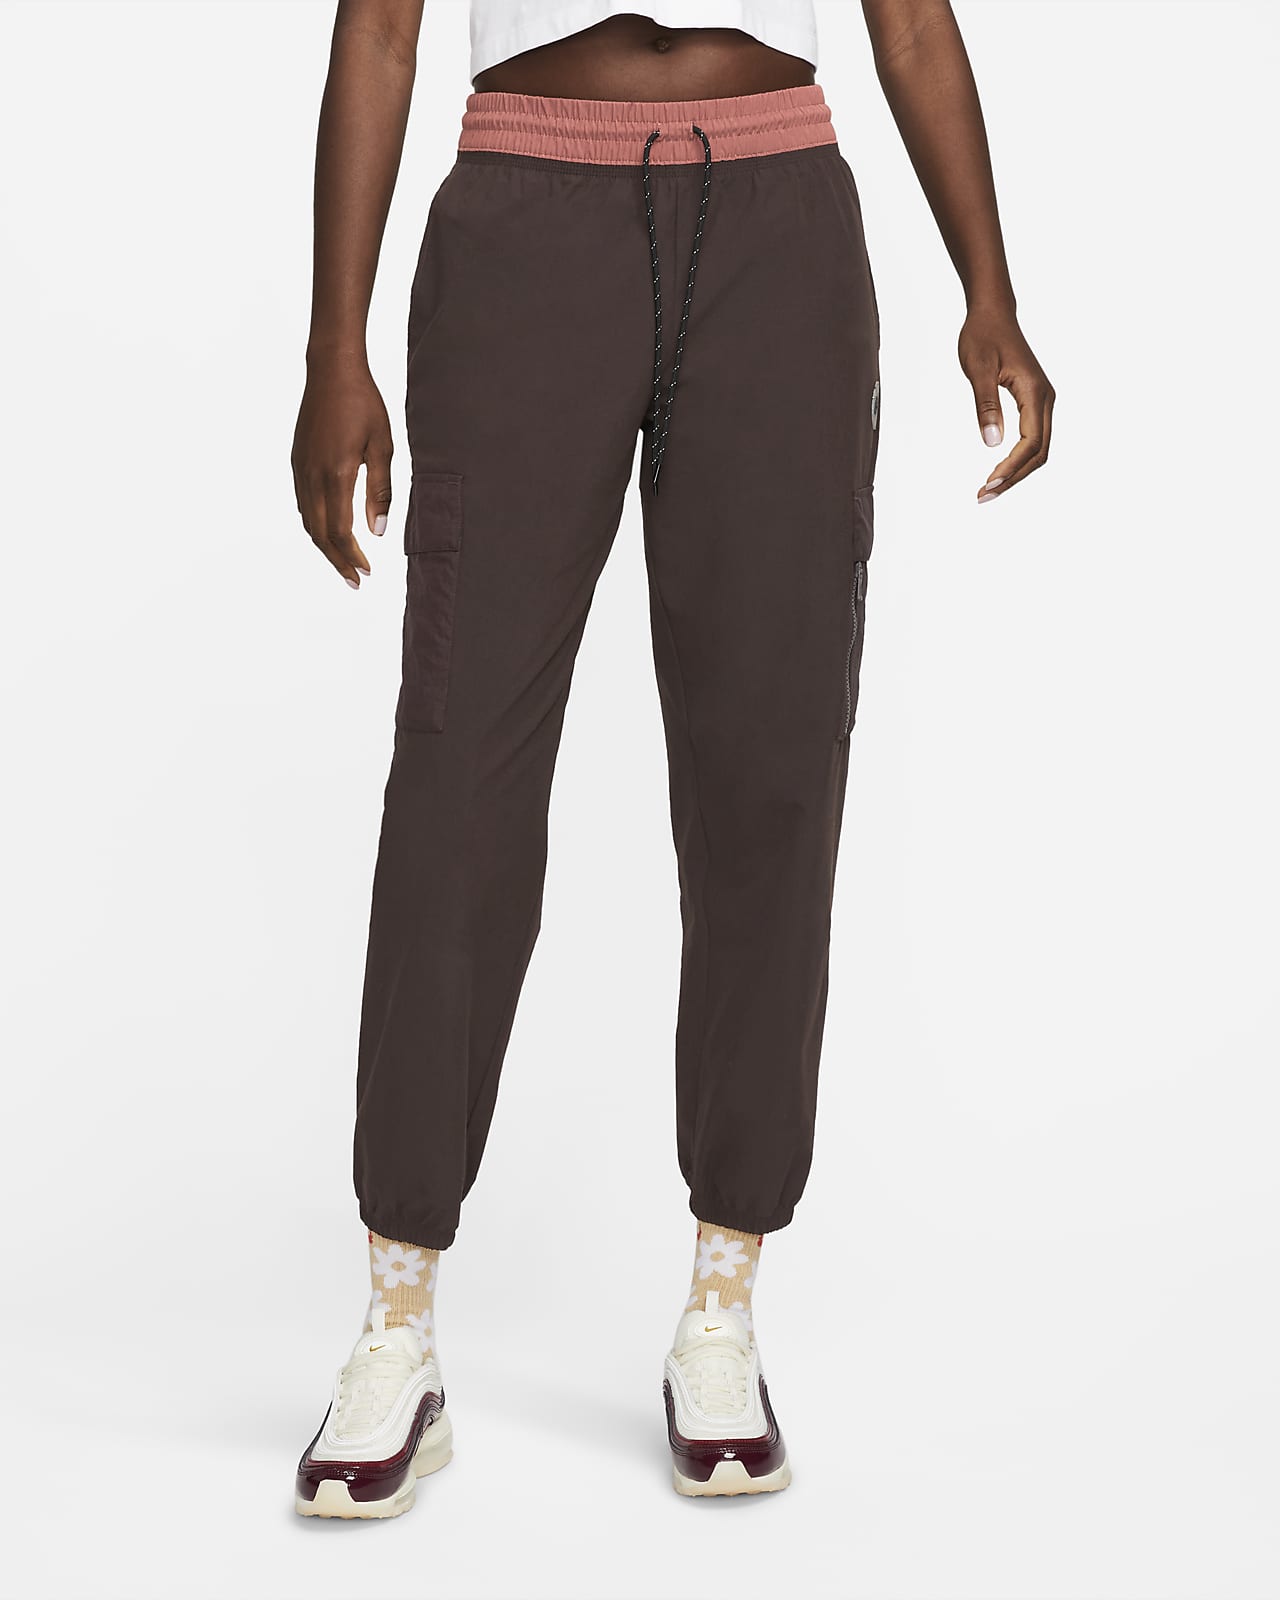 Nike Sportswear Pantalón de tejido Woven y funcionalidad deportiva - Mujer. Nike ES